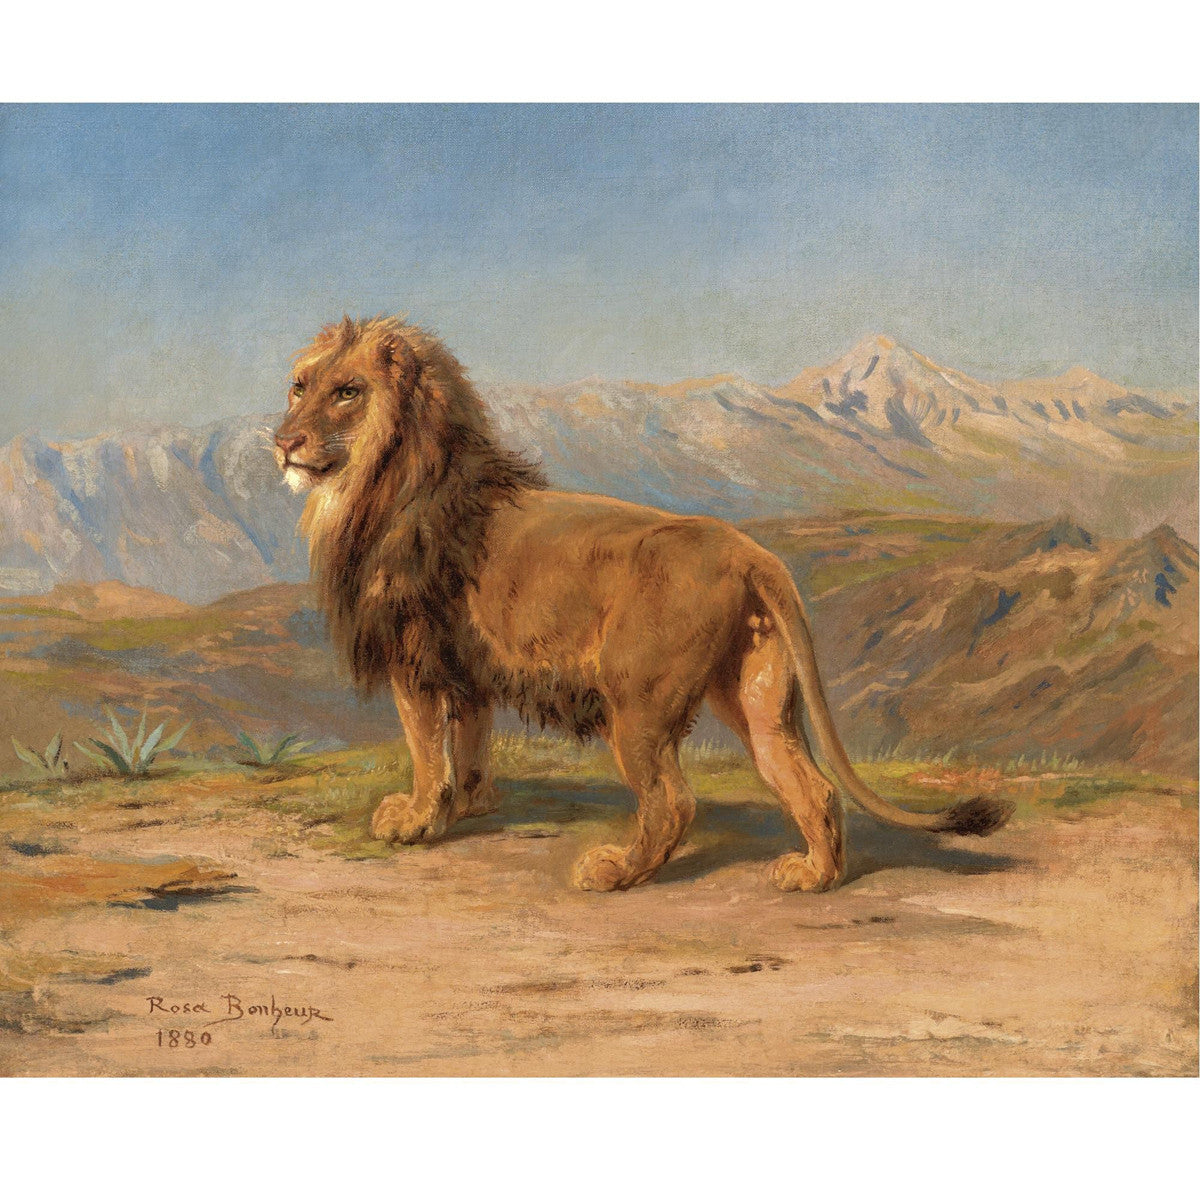 Rosa Bonheur - Lion in a Mountainous Landscape